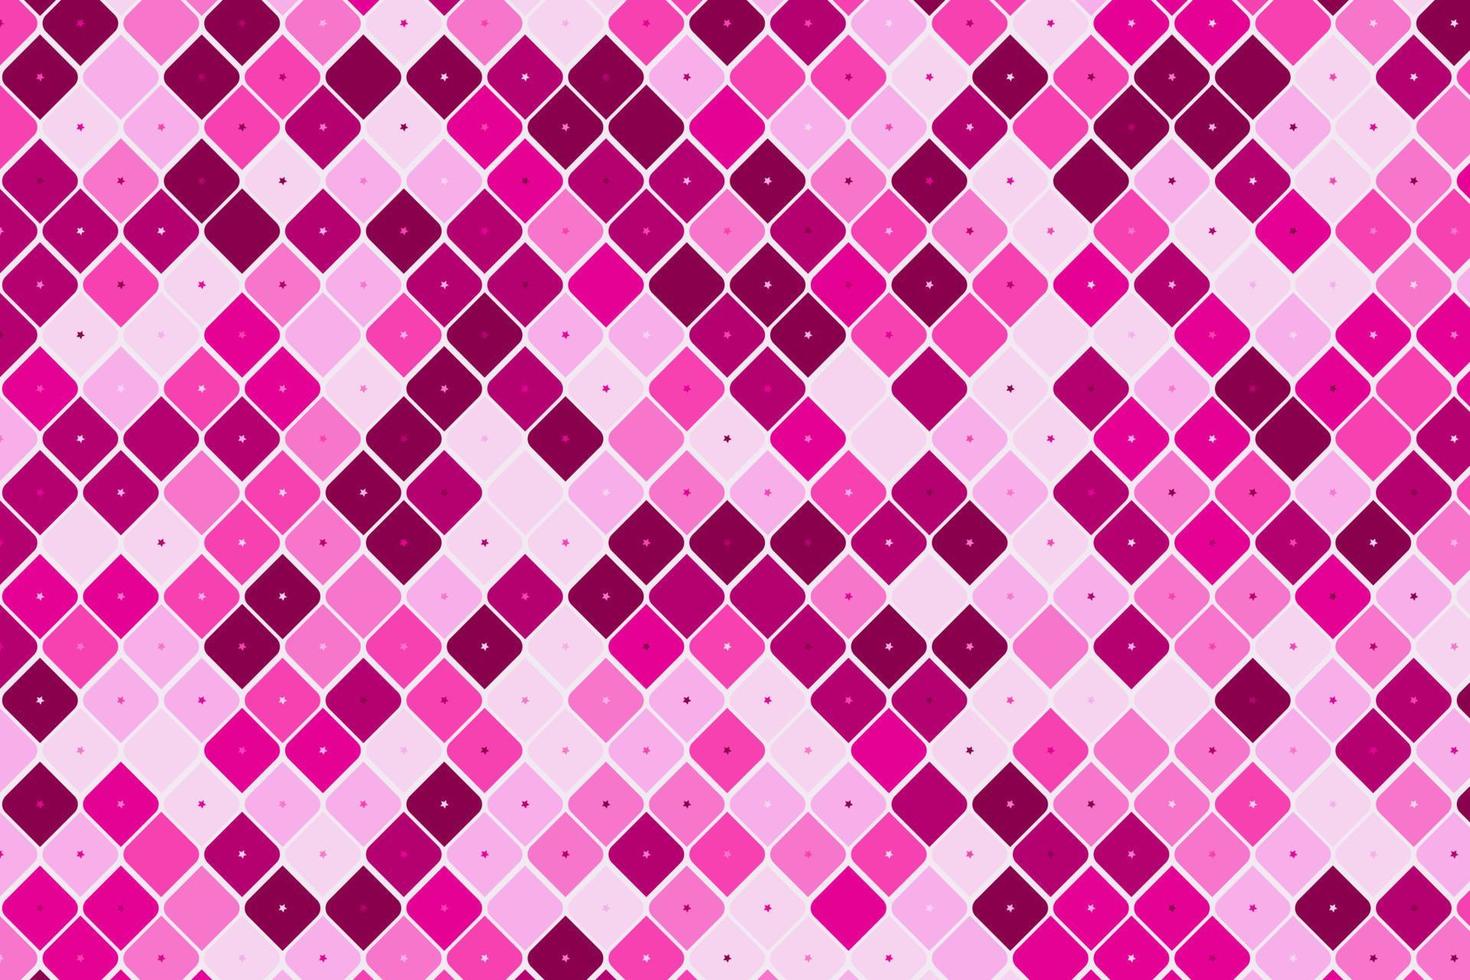 padrão com elementos geométricos em tons de rosa. gradiente. fundo abstrato para o projeto. vetor